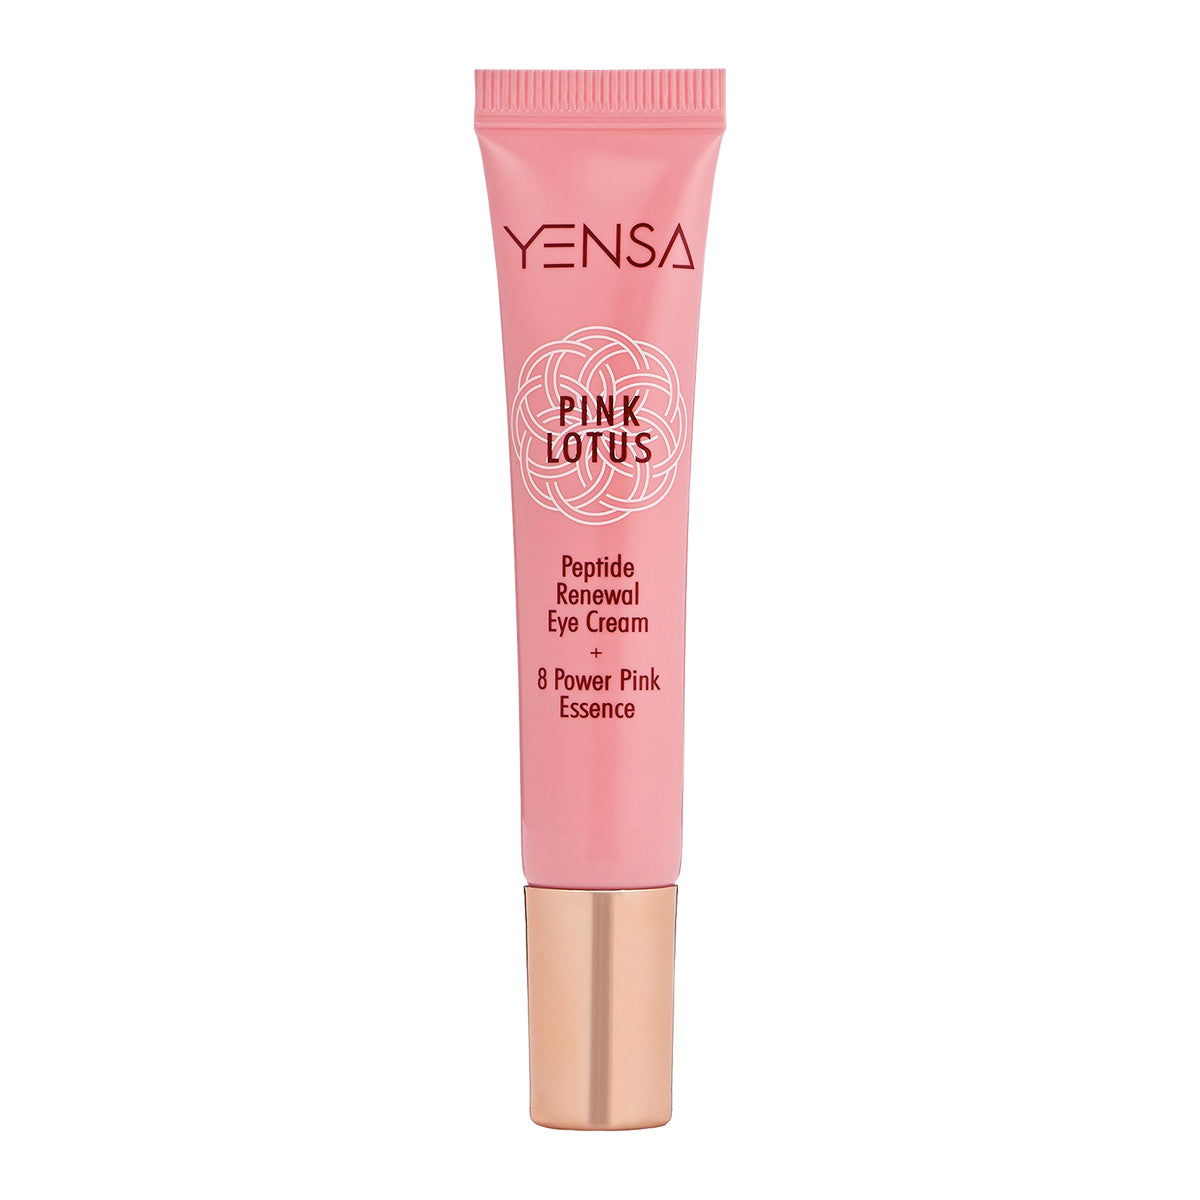 Yensa Pink Lotus Peptide Renewal Eye Cream 0.5 oz